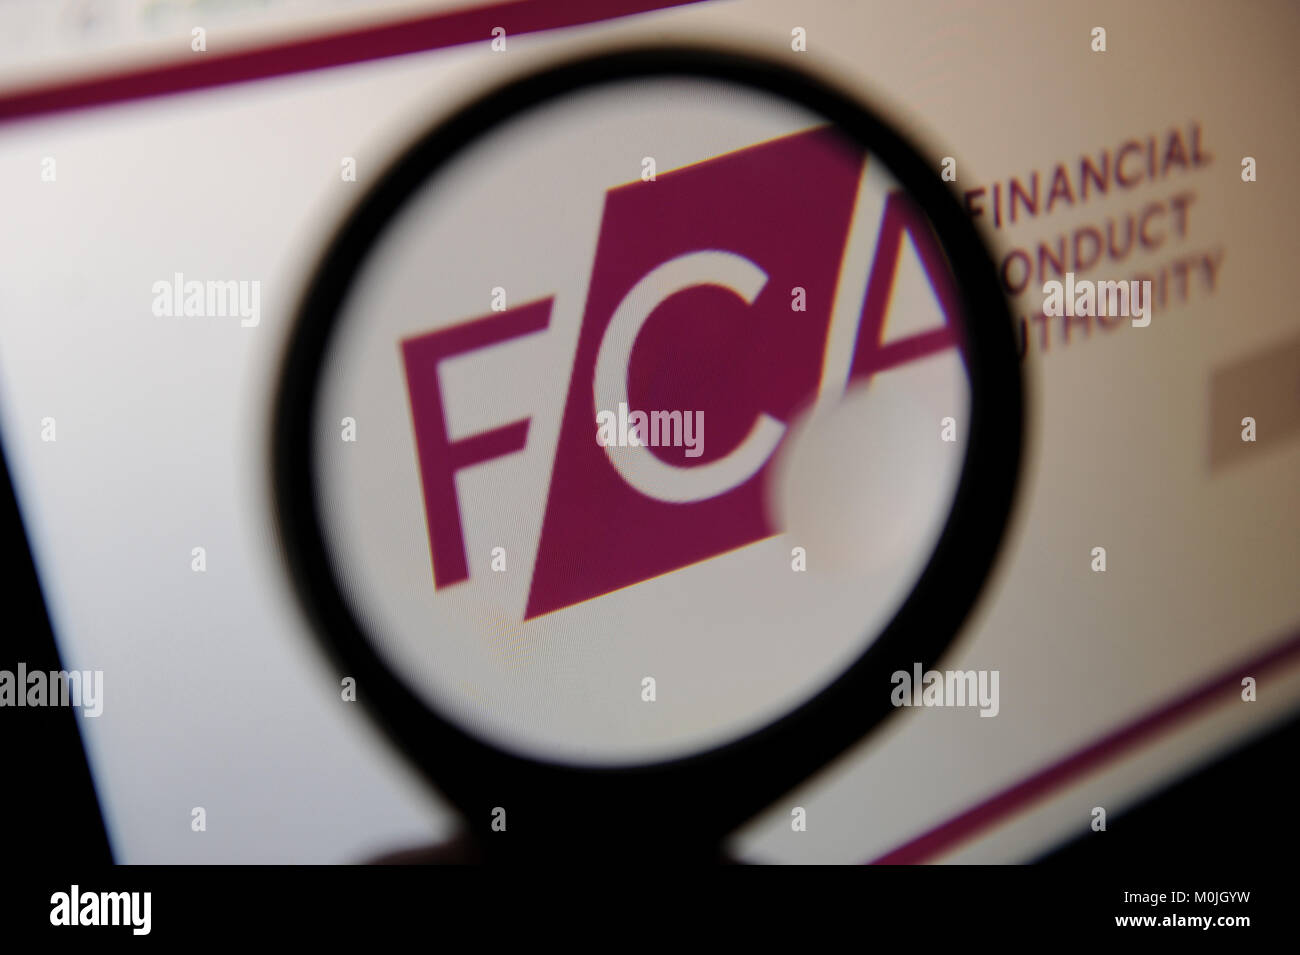 La conducta de la autoridad financiera logotipo del sitio web vistos a través de una lupa Foto de stock